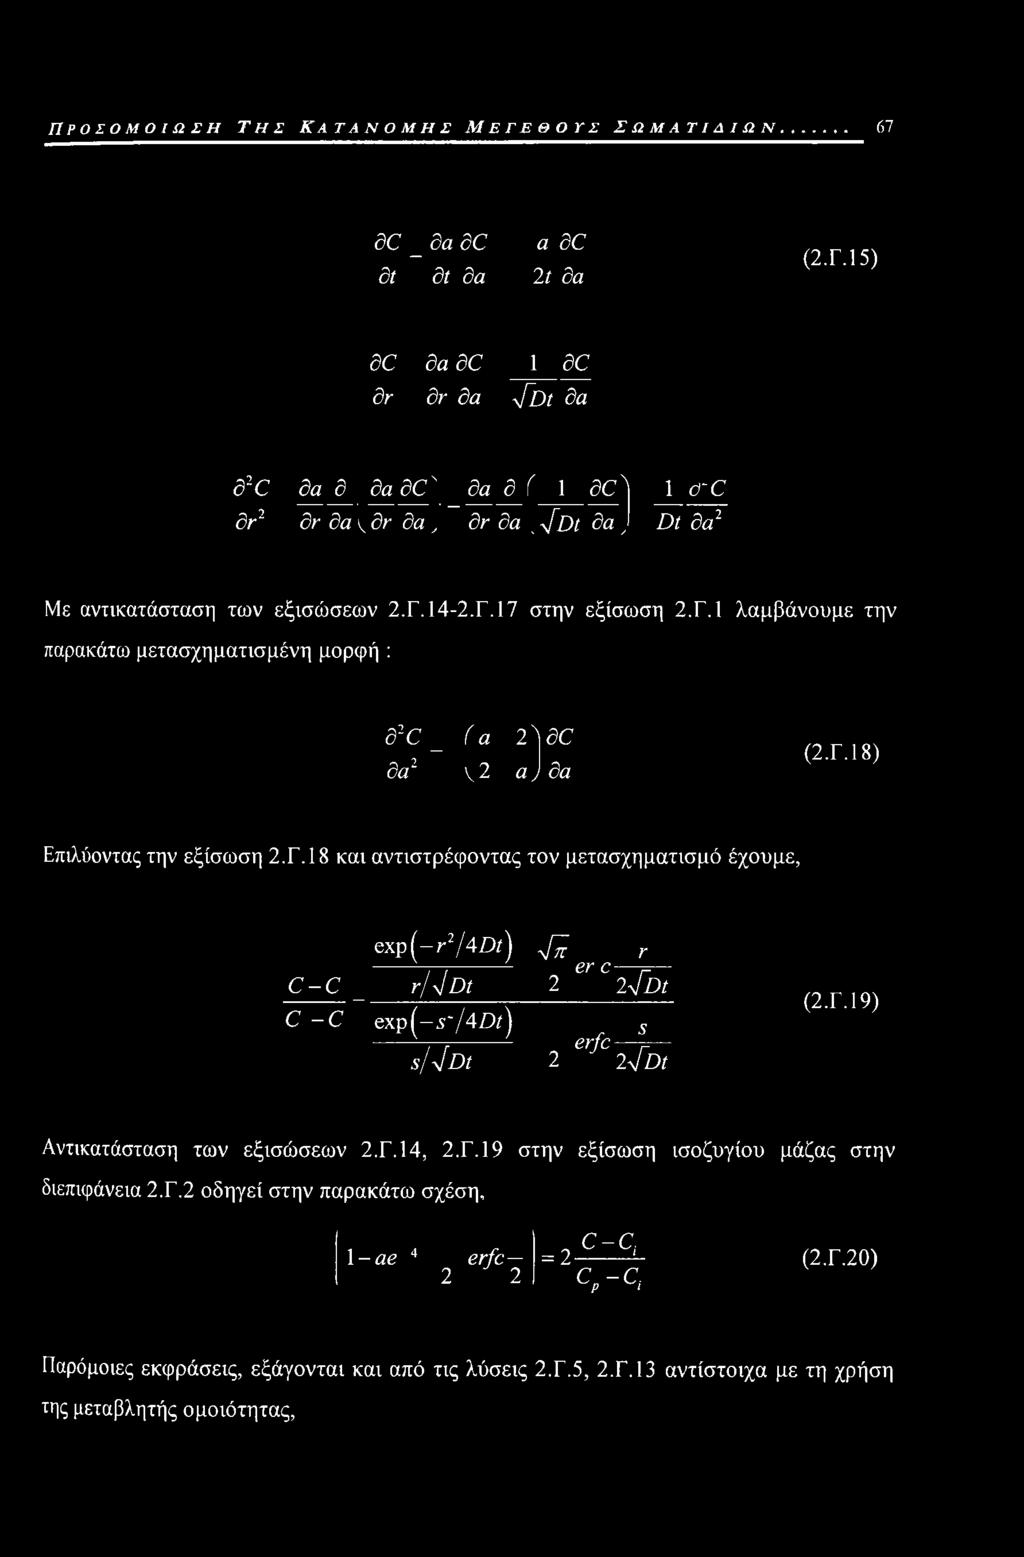 Γ.19) Αντικατάσταση των εξισώσεων 2.Γ.14, 2.Γ.19 στην εξίσωση ισοζυγίου μάζας στην διεπιφάνεια 2.Γ.2 οδηγεί στην παρακάτω σχέση. 1 -ae 4 erfc 2 2 = 2- c-c, ς-ς (2.Γ.20) Παρόμοιες εκφράσεις, εξάγονται και από τις λύσεις 2.